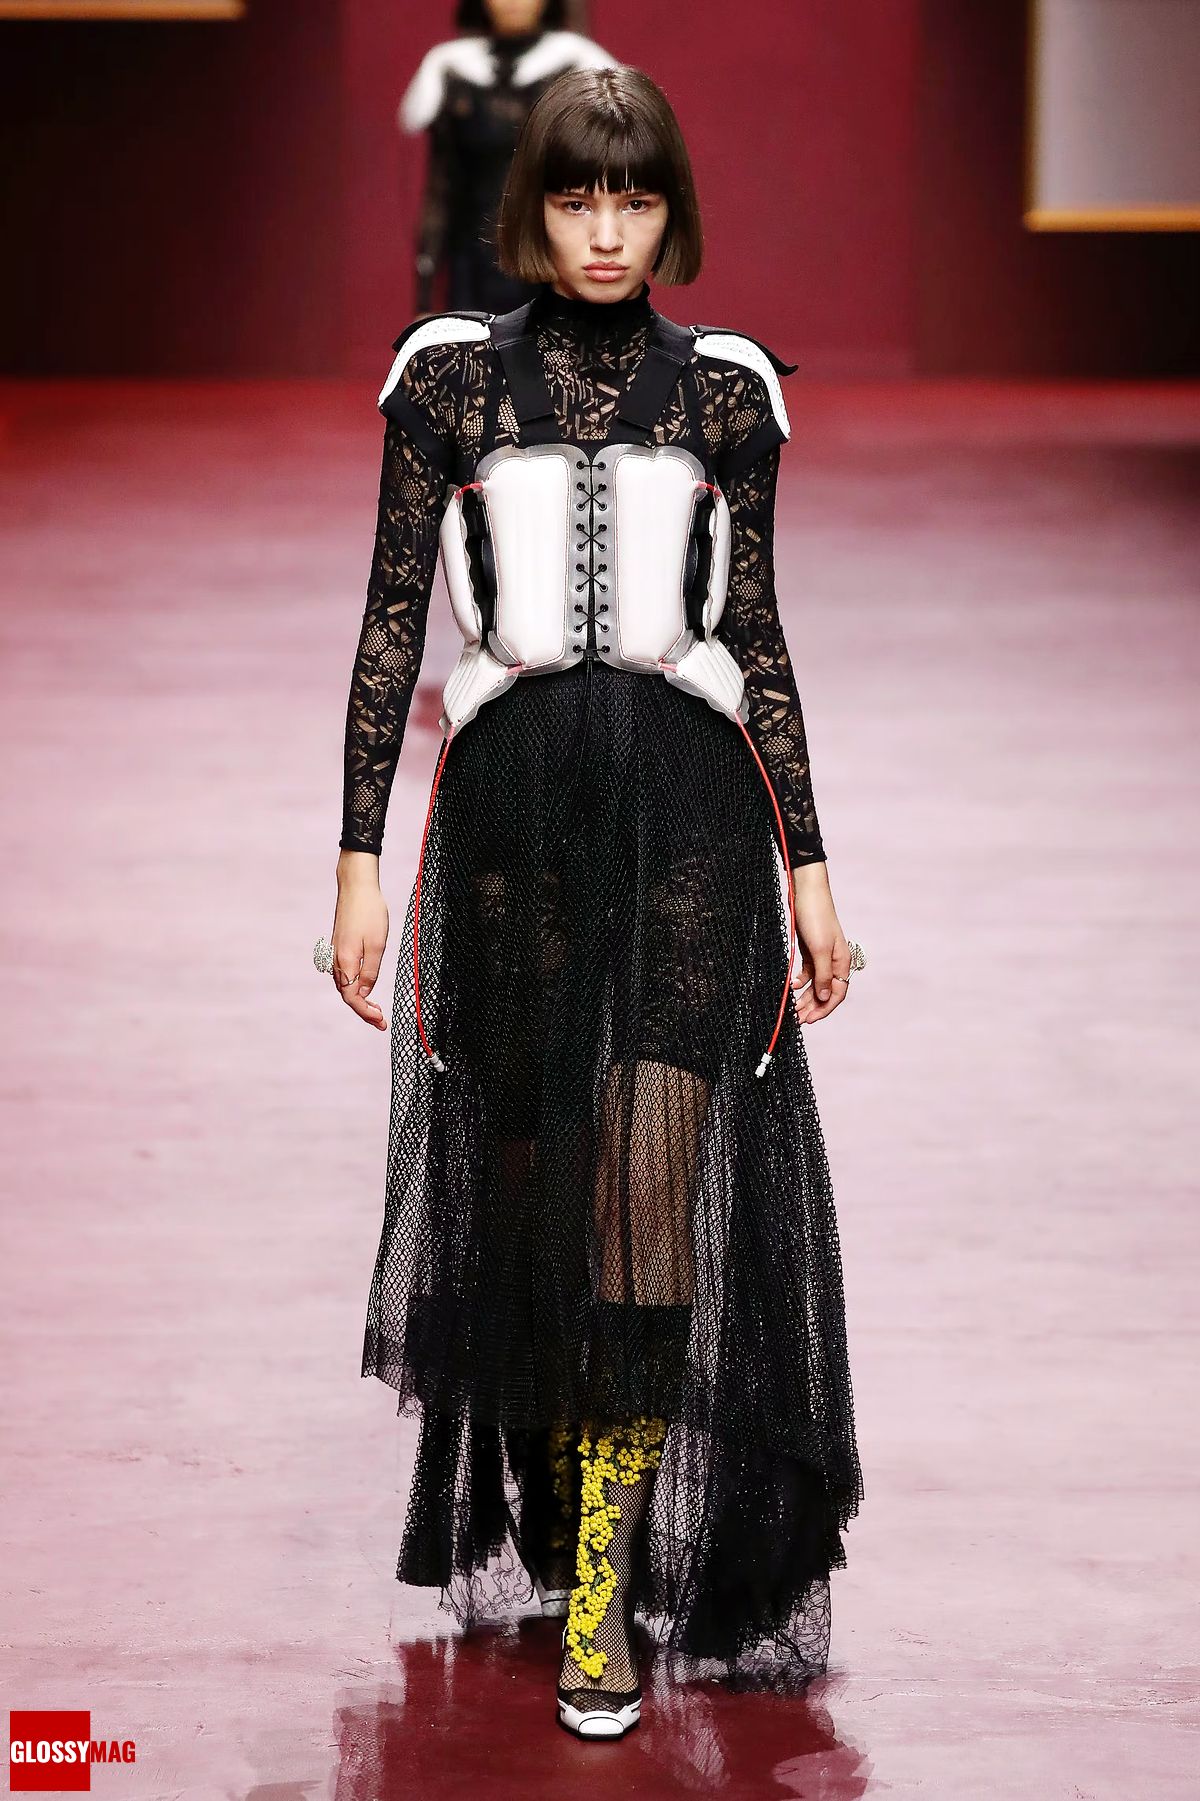 Шоу Dior Womenswear Осень/Зима 2022/23 в рамках Недели моды в Париже, 1 марта 2022 г.